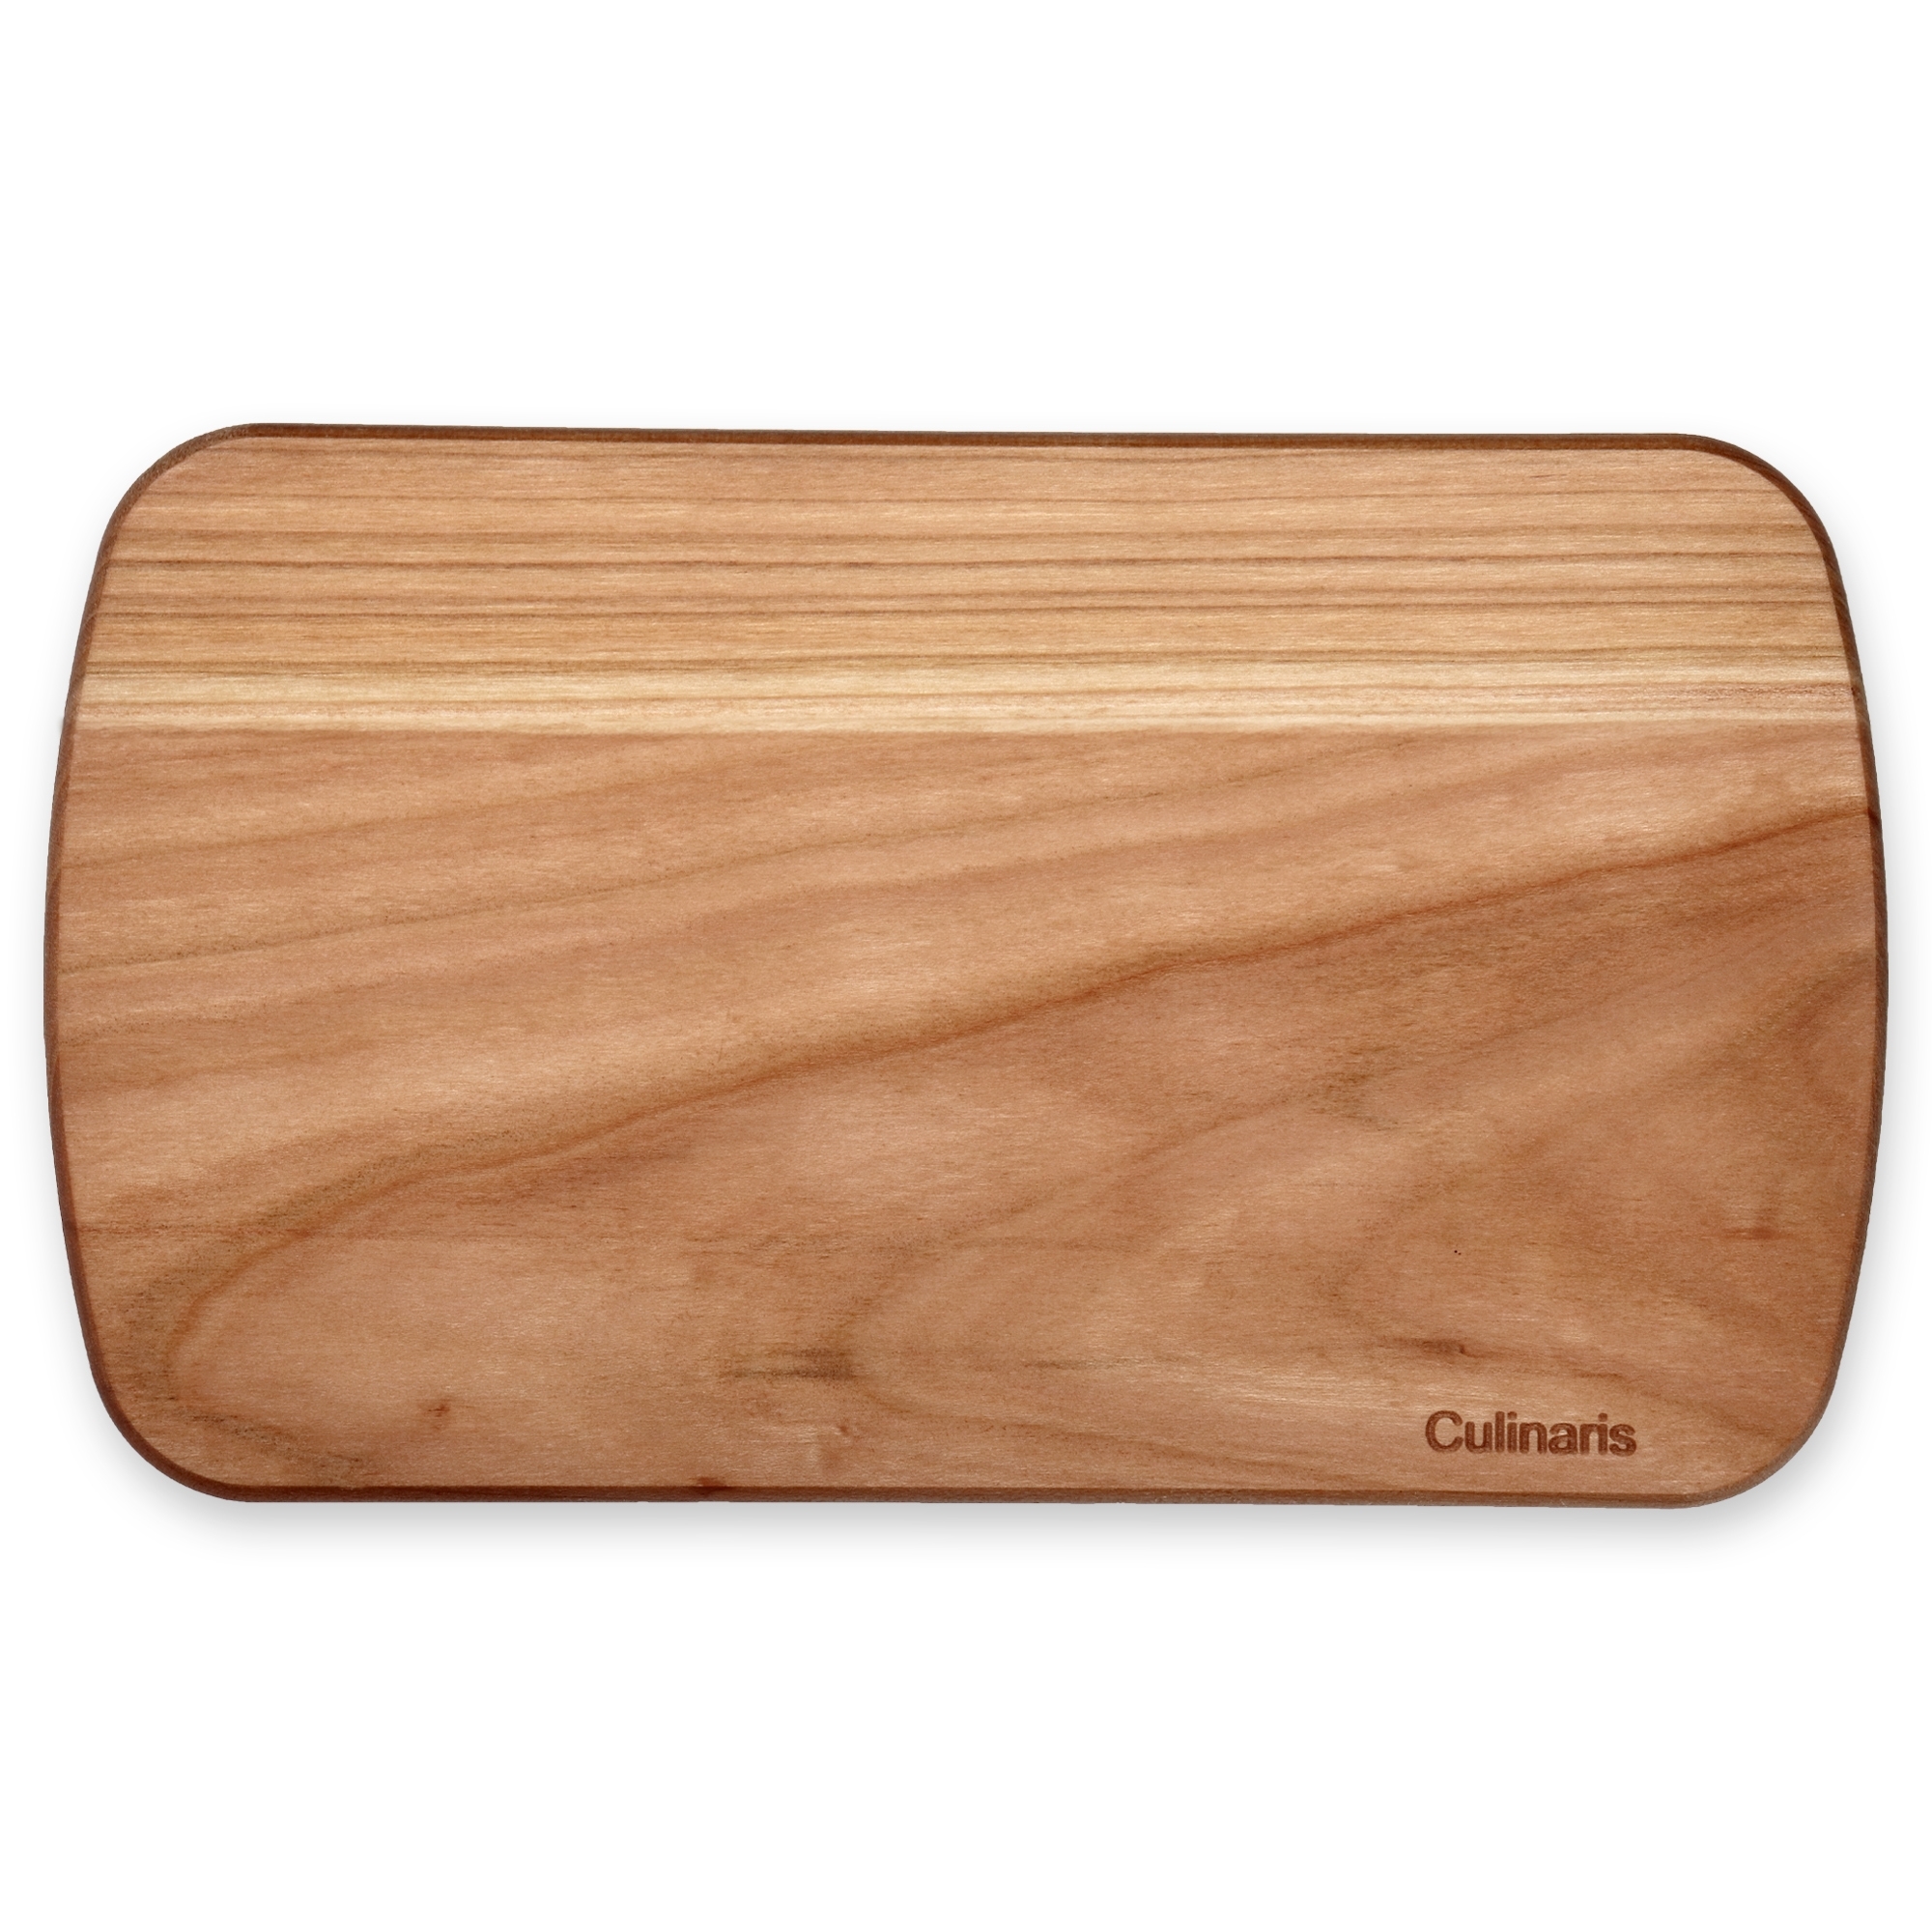 Culinaris - cutting board - cherry wood set of 6 - 24 x 14 cm